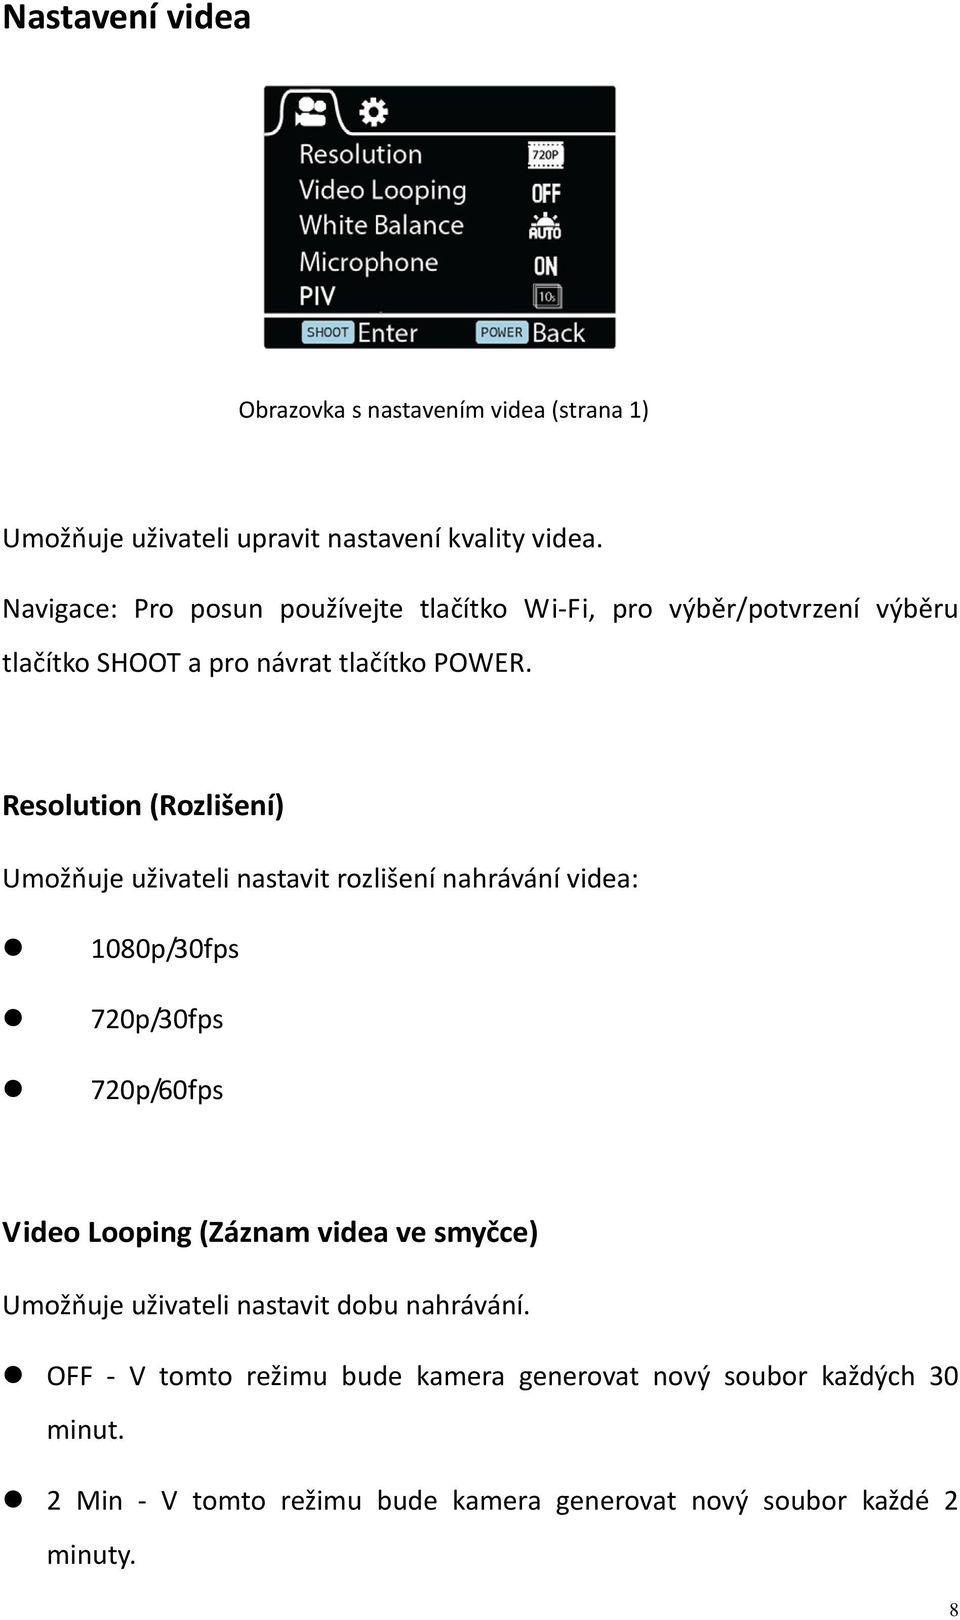 Resolution (Rozlišení) Umožňuje uživateli nastavit rozlišení nahrávání videa: 1080p/30fps 720p/30fps 720p/60fps Video Looping (Záznam videa